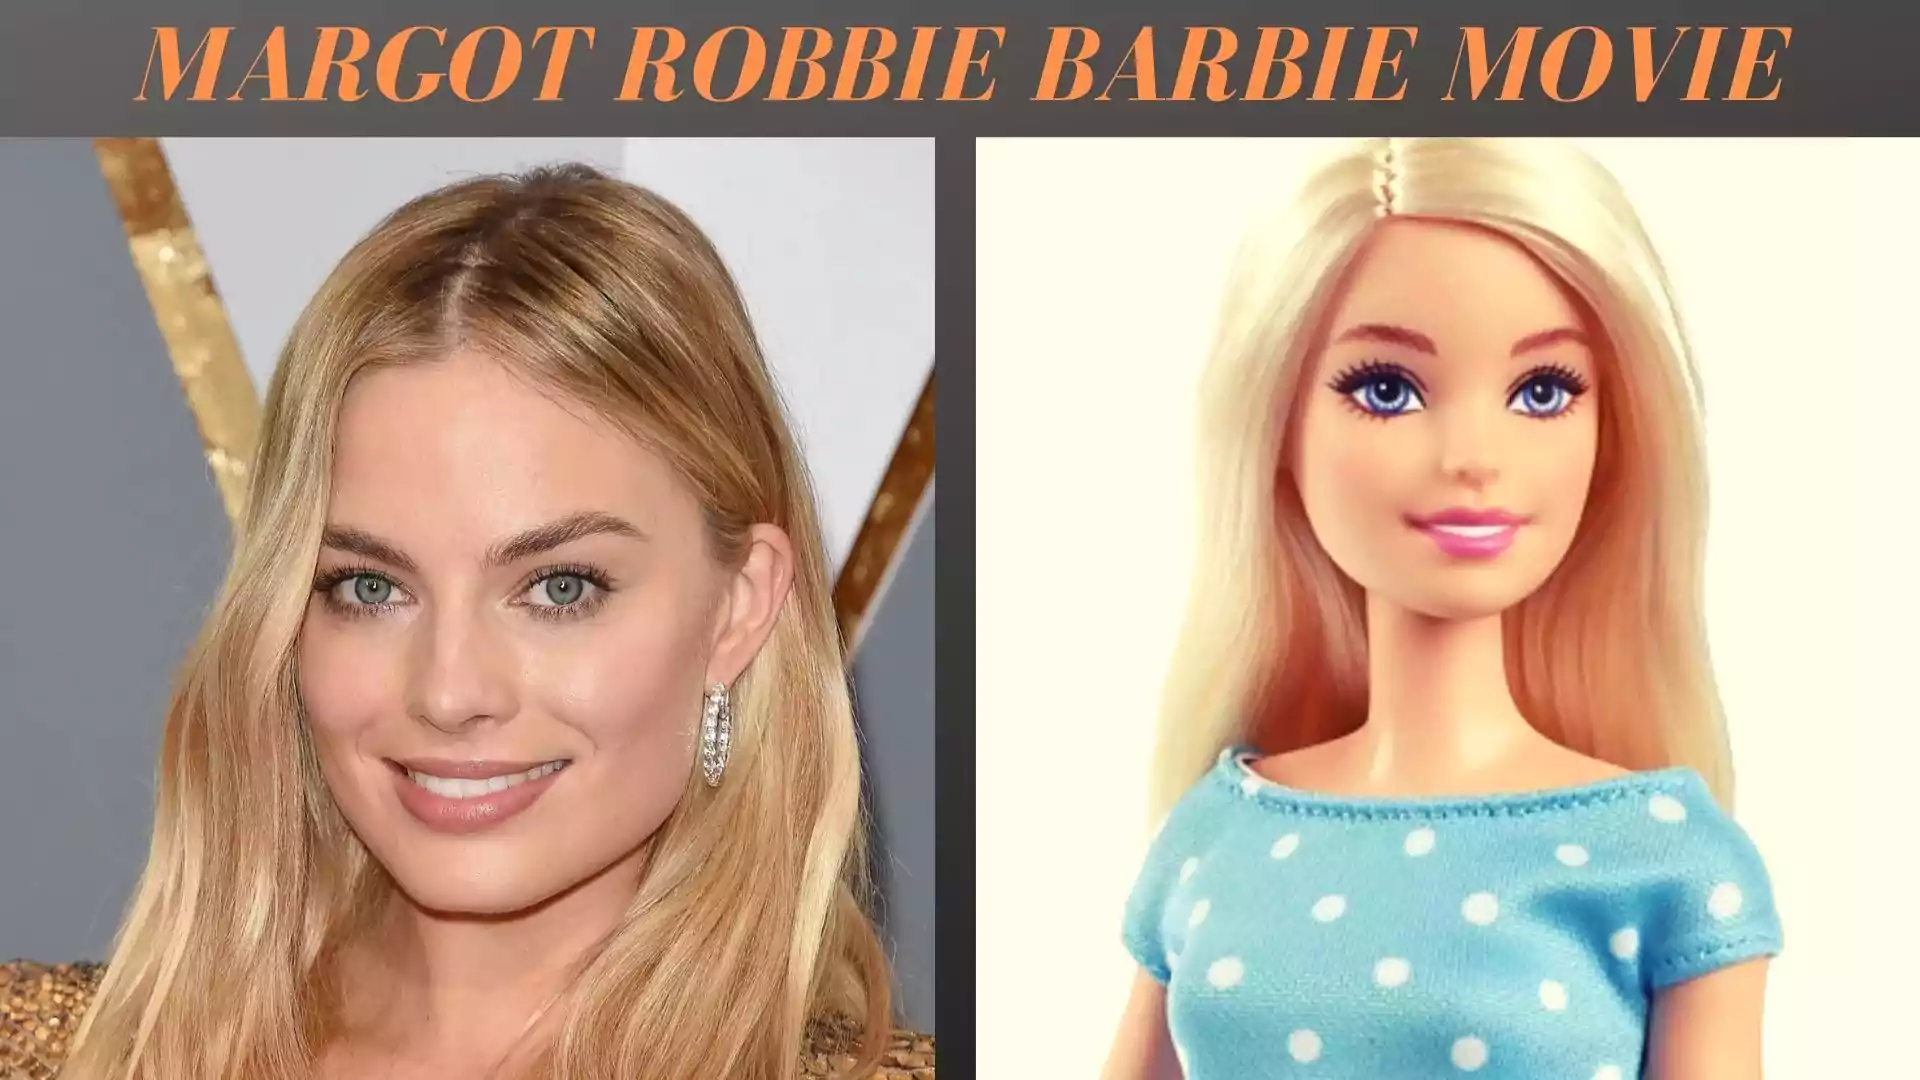 Margot Robbie Barbie Movie | Barbie 2023 Film